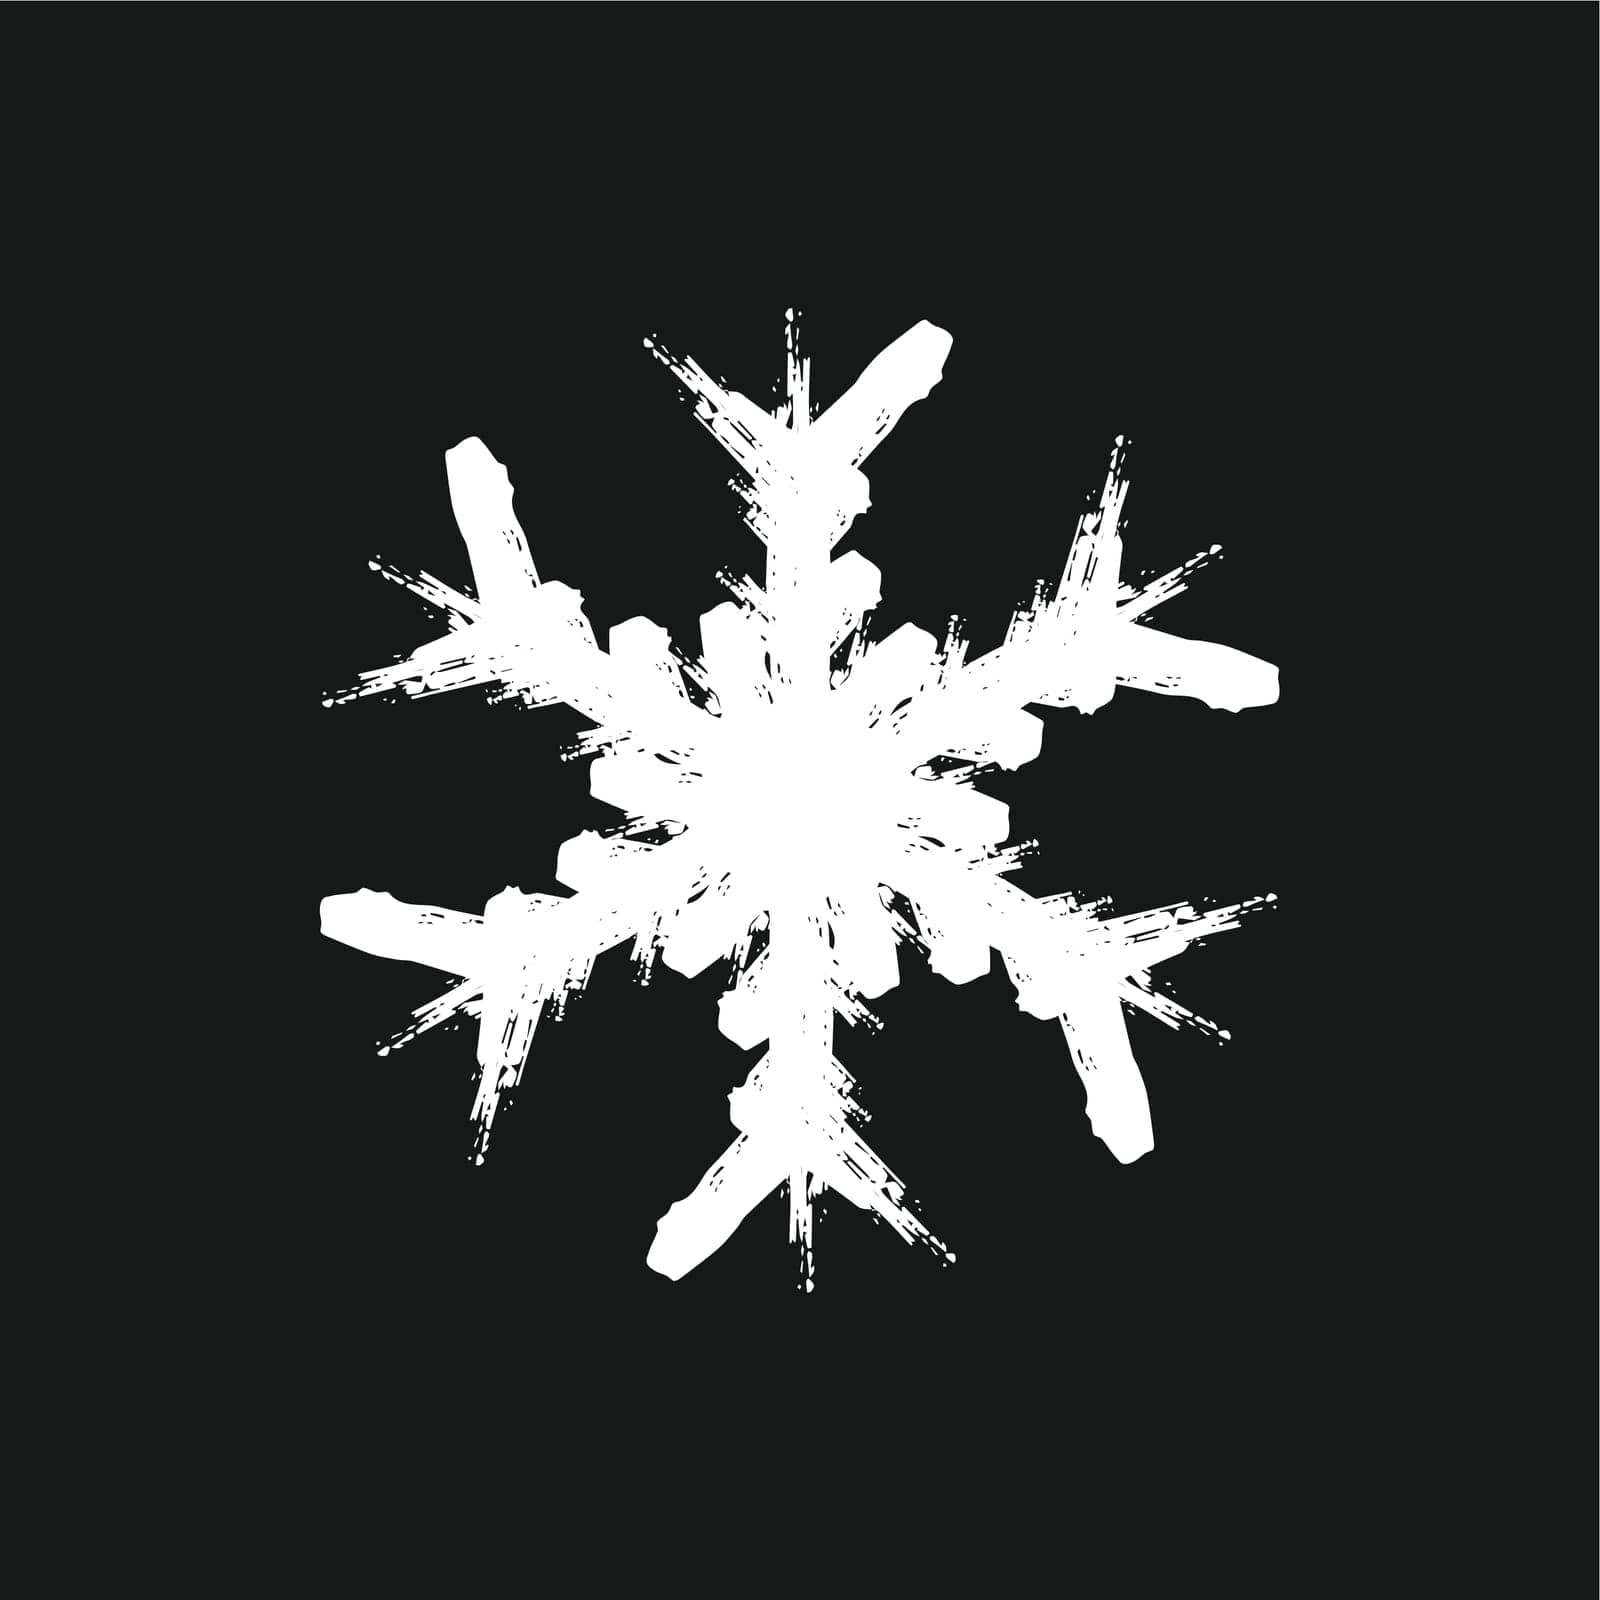 Grunge Isolate Snowflake by benjaminlion